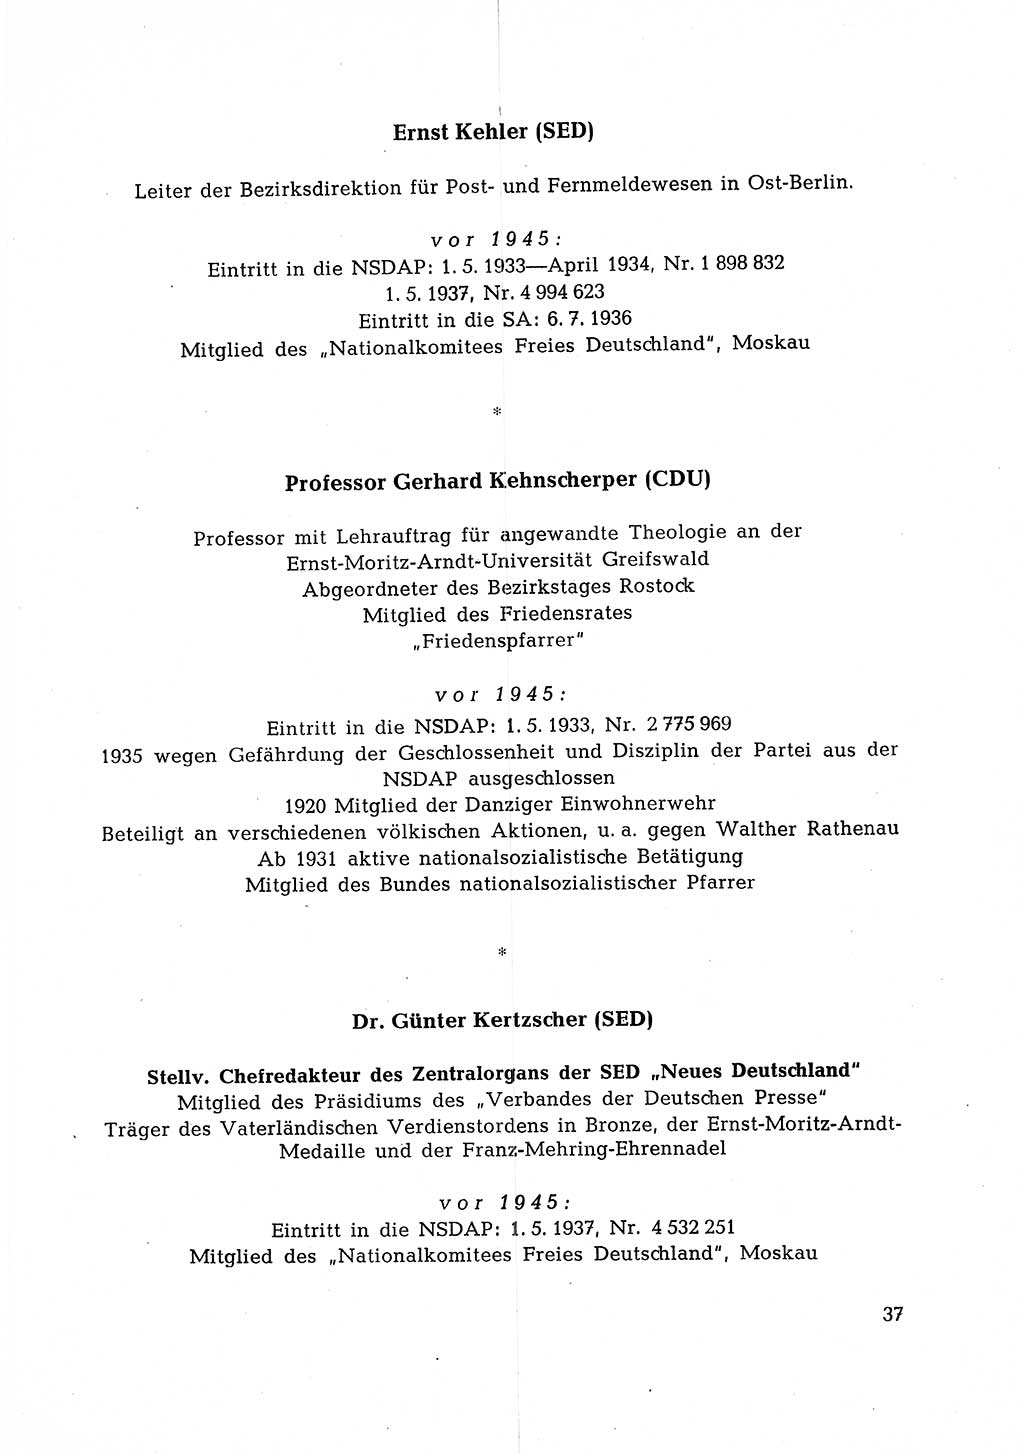 Ehemalige Nationalsozialisten in Pankows Diensten [Deutsche Demokratische Republik (DDR)] 1965, Seite 37 (Ehem. Nat.-Soz. DDR 1965, S. 37)